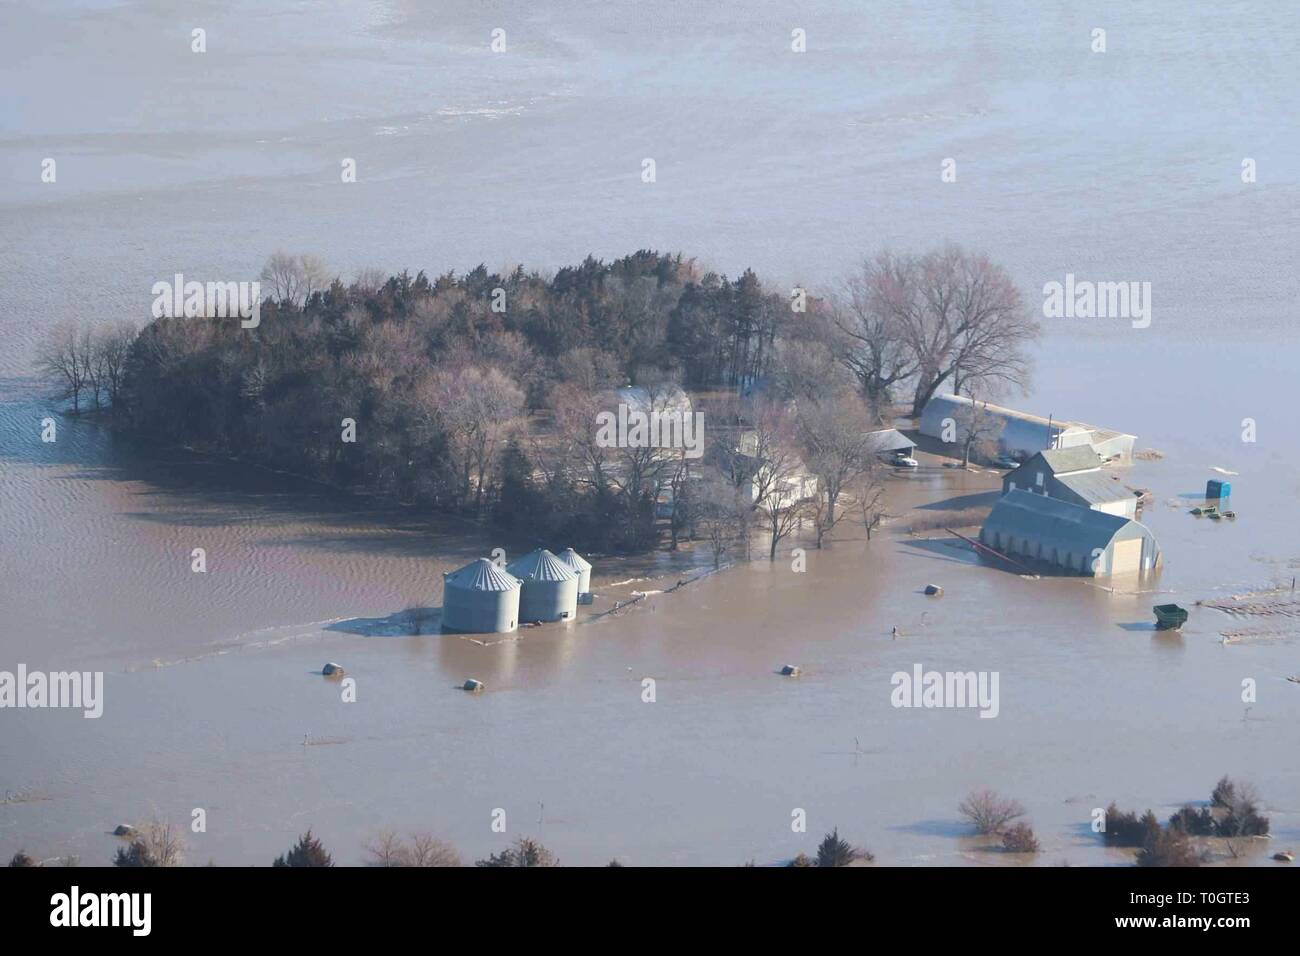 Luftaufnahme von einer Farm komplett vom Hochwasser März 16, 2019 in der Nähe der Fremont, Nebraska überwältigt. Historische Hochwasser durch schnelles Schmelzen von Schnee fegen durch die ländlichen Gemeinschaften in Nebraska und Iowa tötet mindestens vier Menschen in den Ebenen und Midwest verursacht. Stockfoto